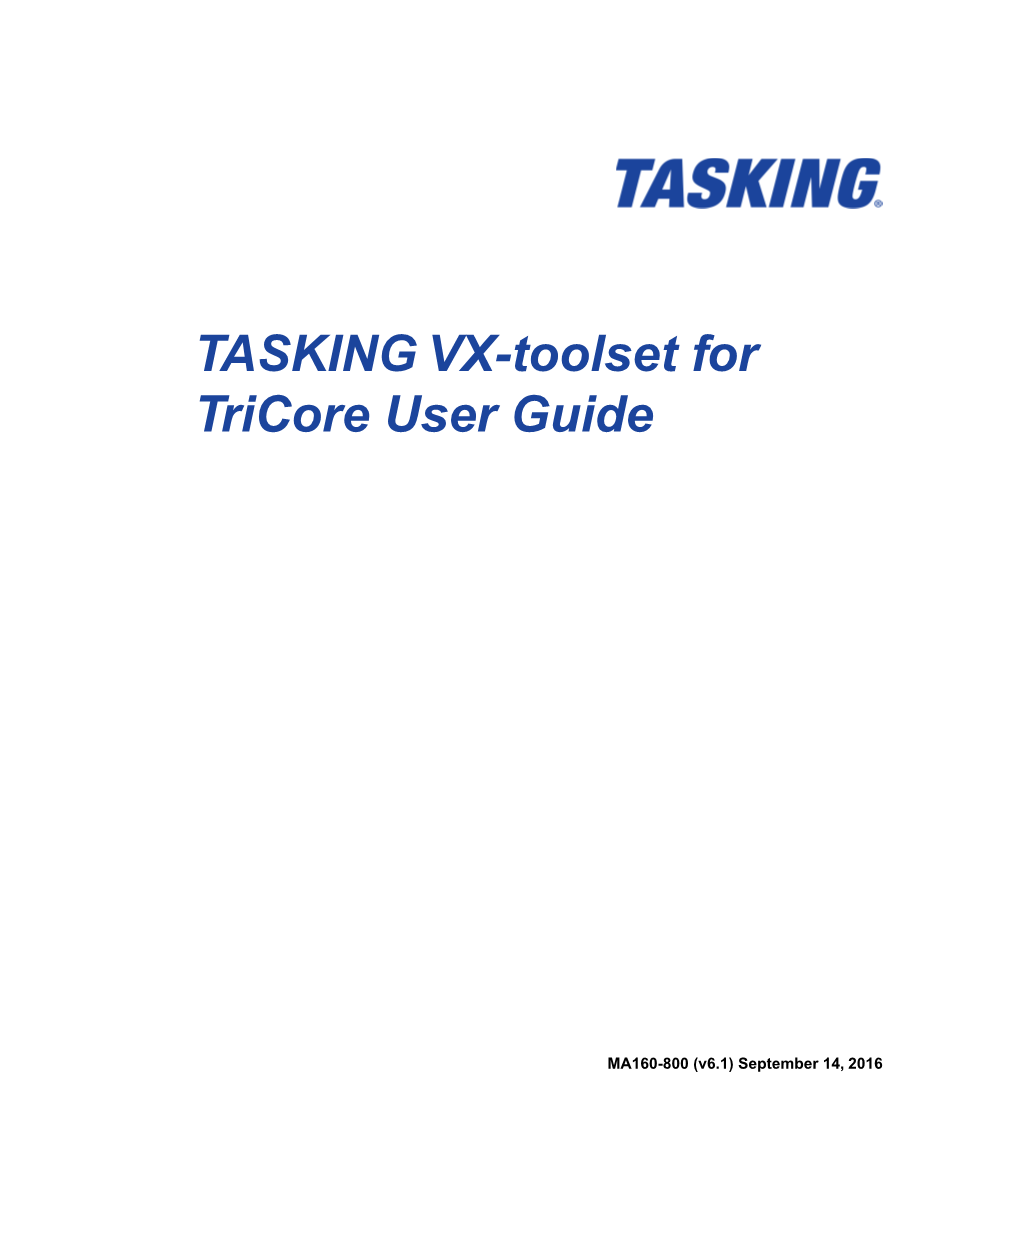 TASKING VX-Toolset for Tricore User Guide